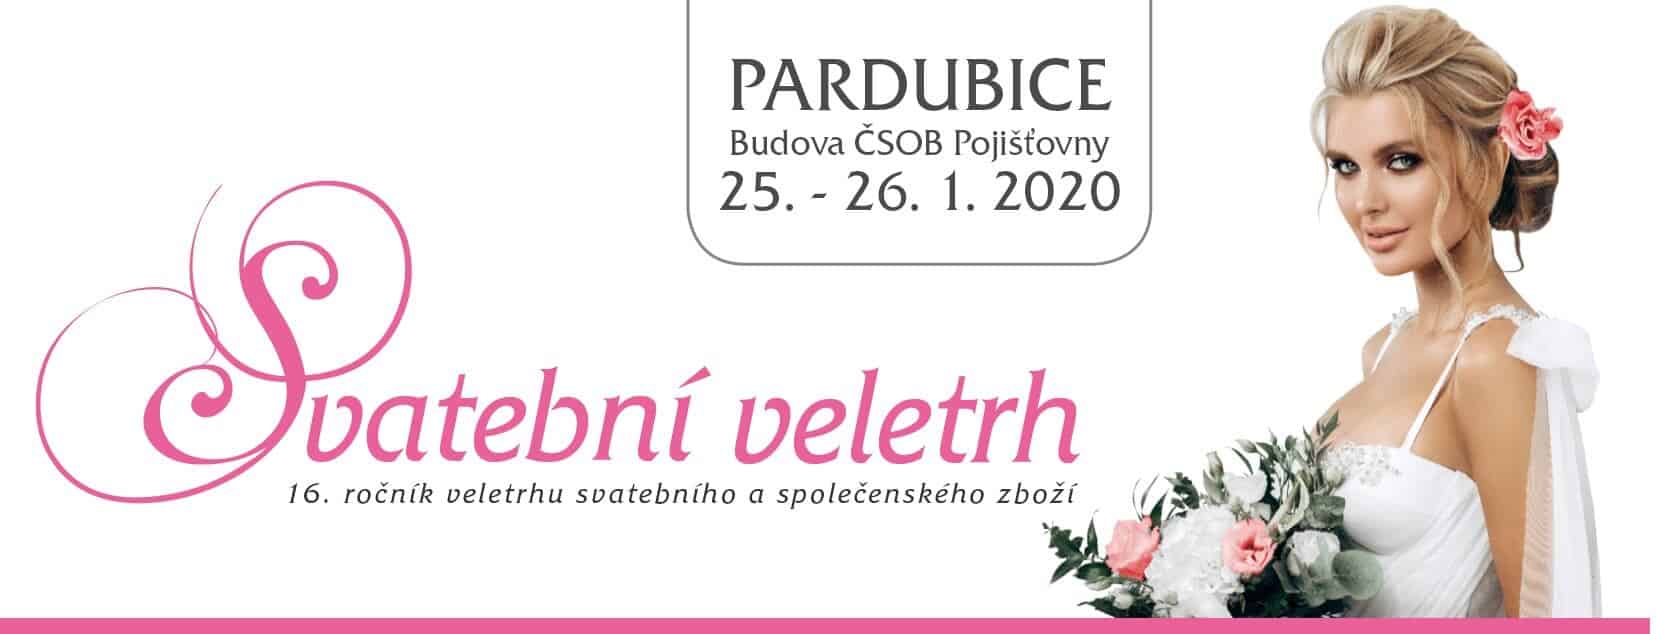 Svatební veletrh Pardubice 2020